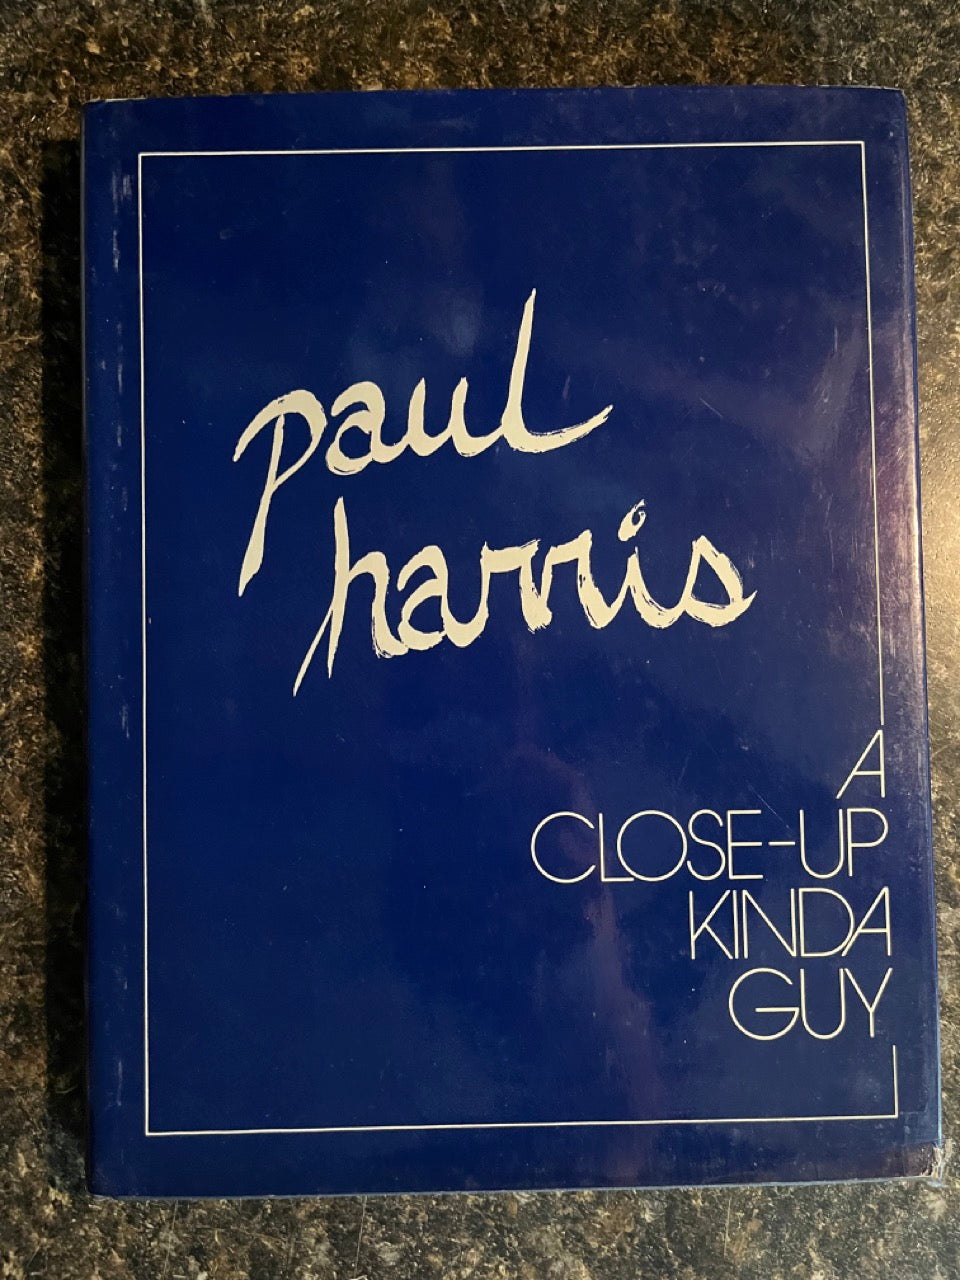 A Close-Up Kinda Guy - Paul Harris